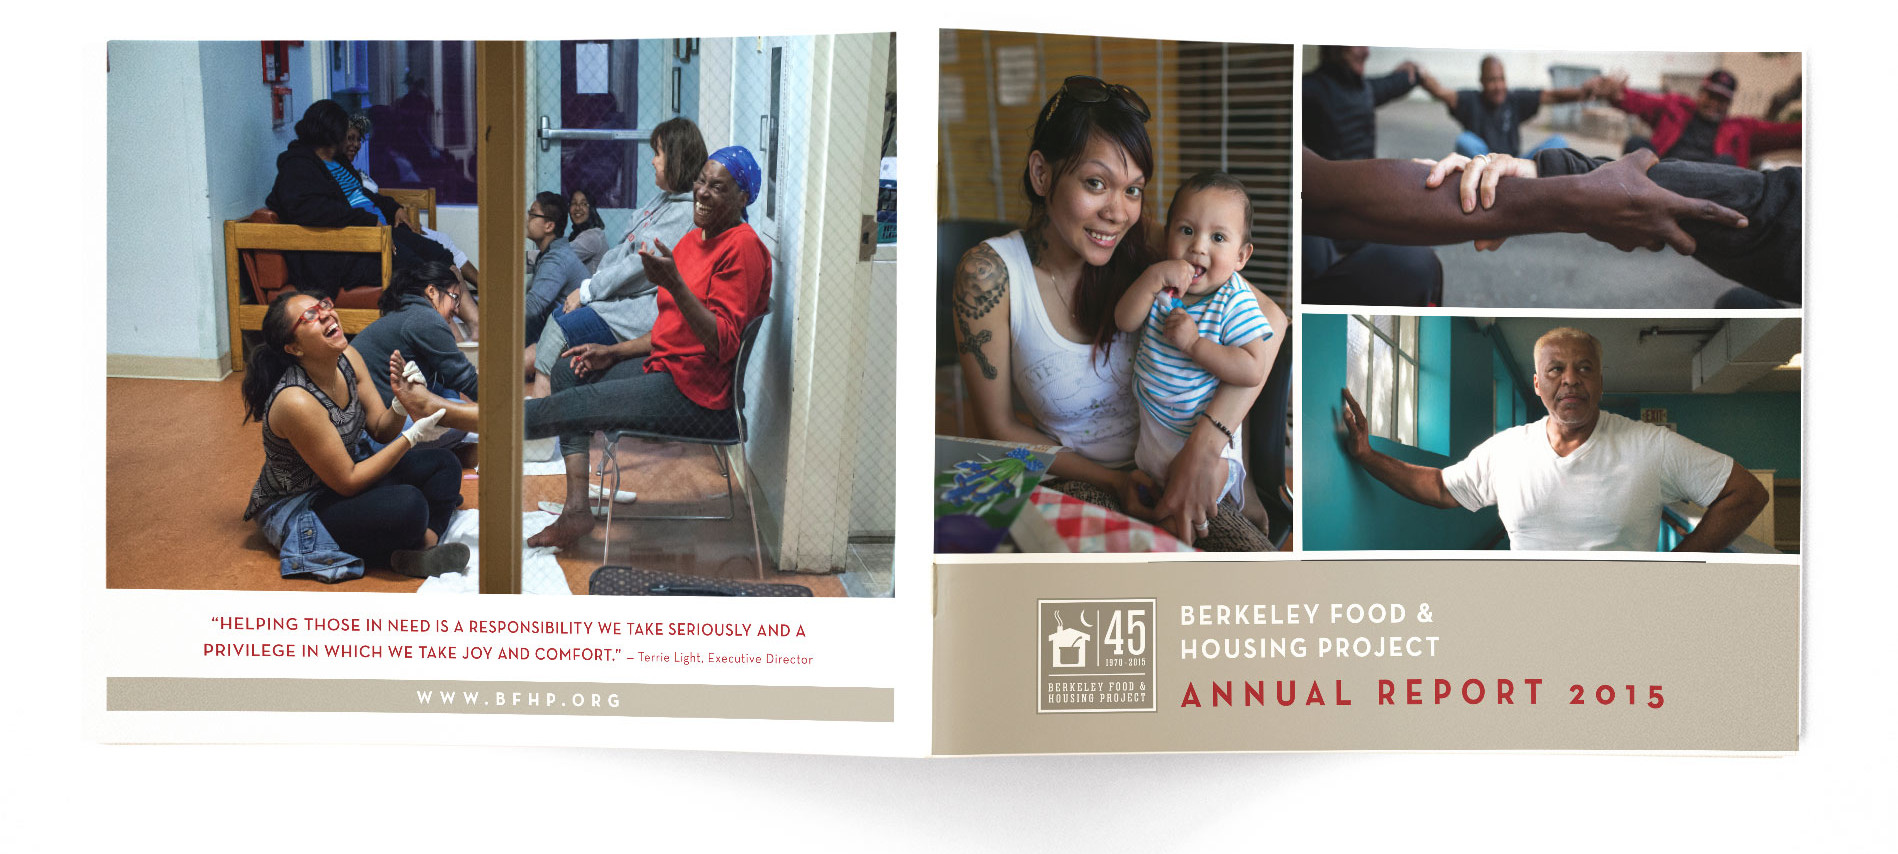 Annual Report design for non profit BFHP